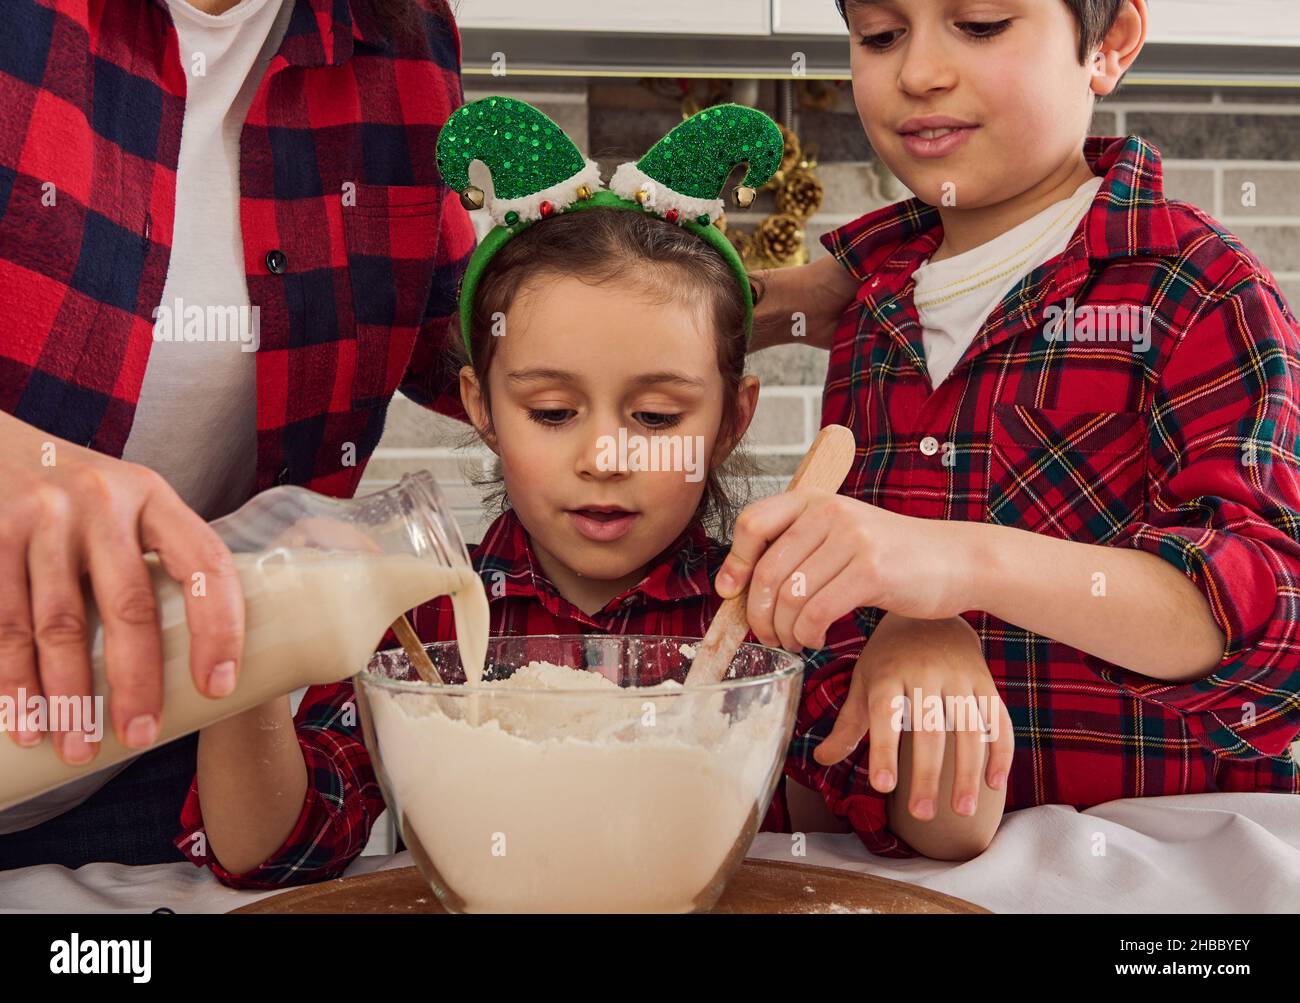 Das hübsche kleine Mädchen sitzt zwischen ihrer liebenden Mutter, die etwas Milch in eine Schüssel mit Mehl gießt, und ihrem fröhlichen älteren Bruder, der trocken mischt und knetet Stockfoto